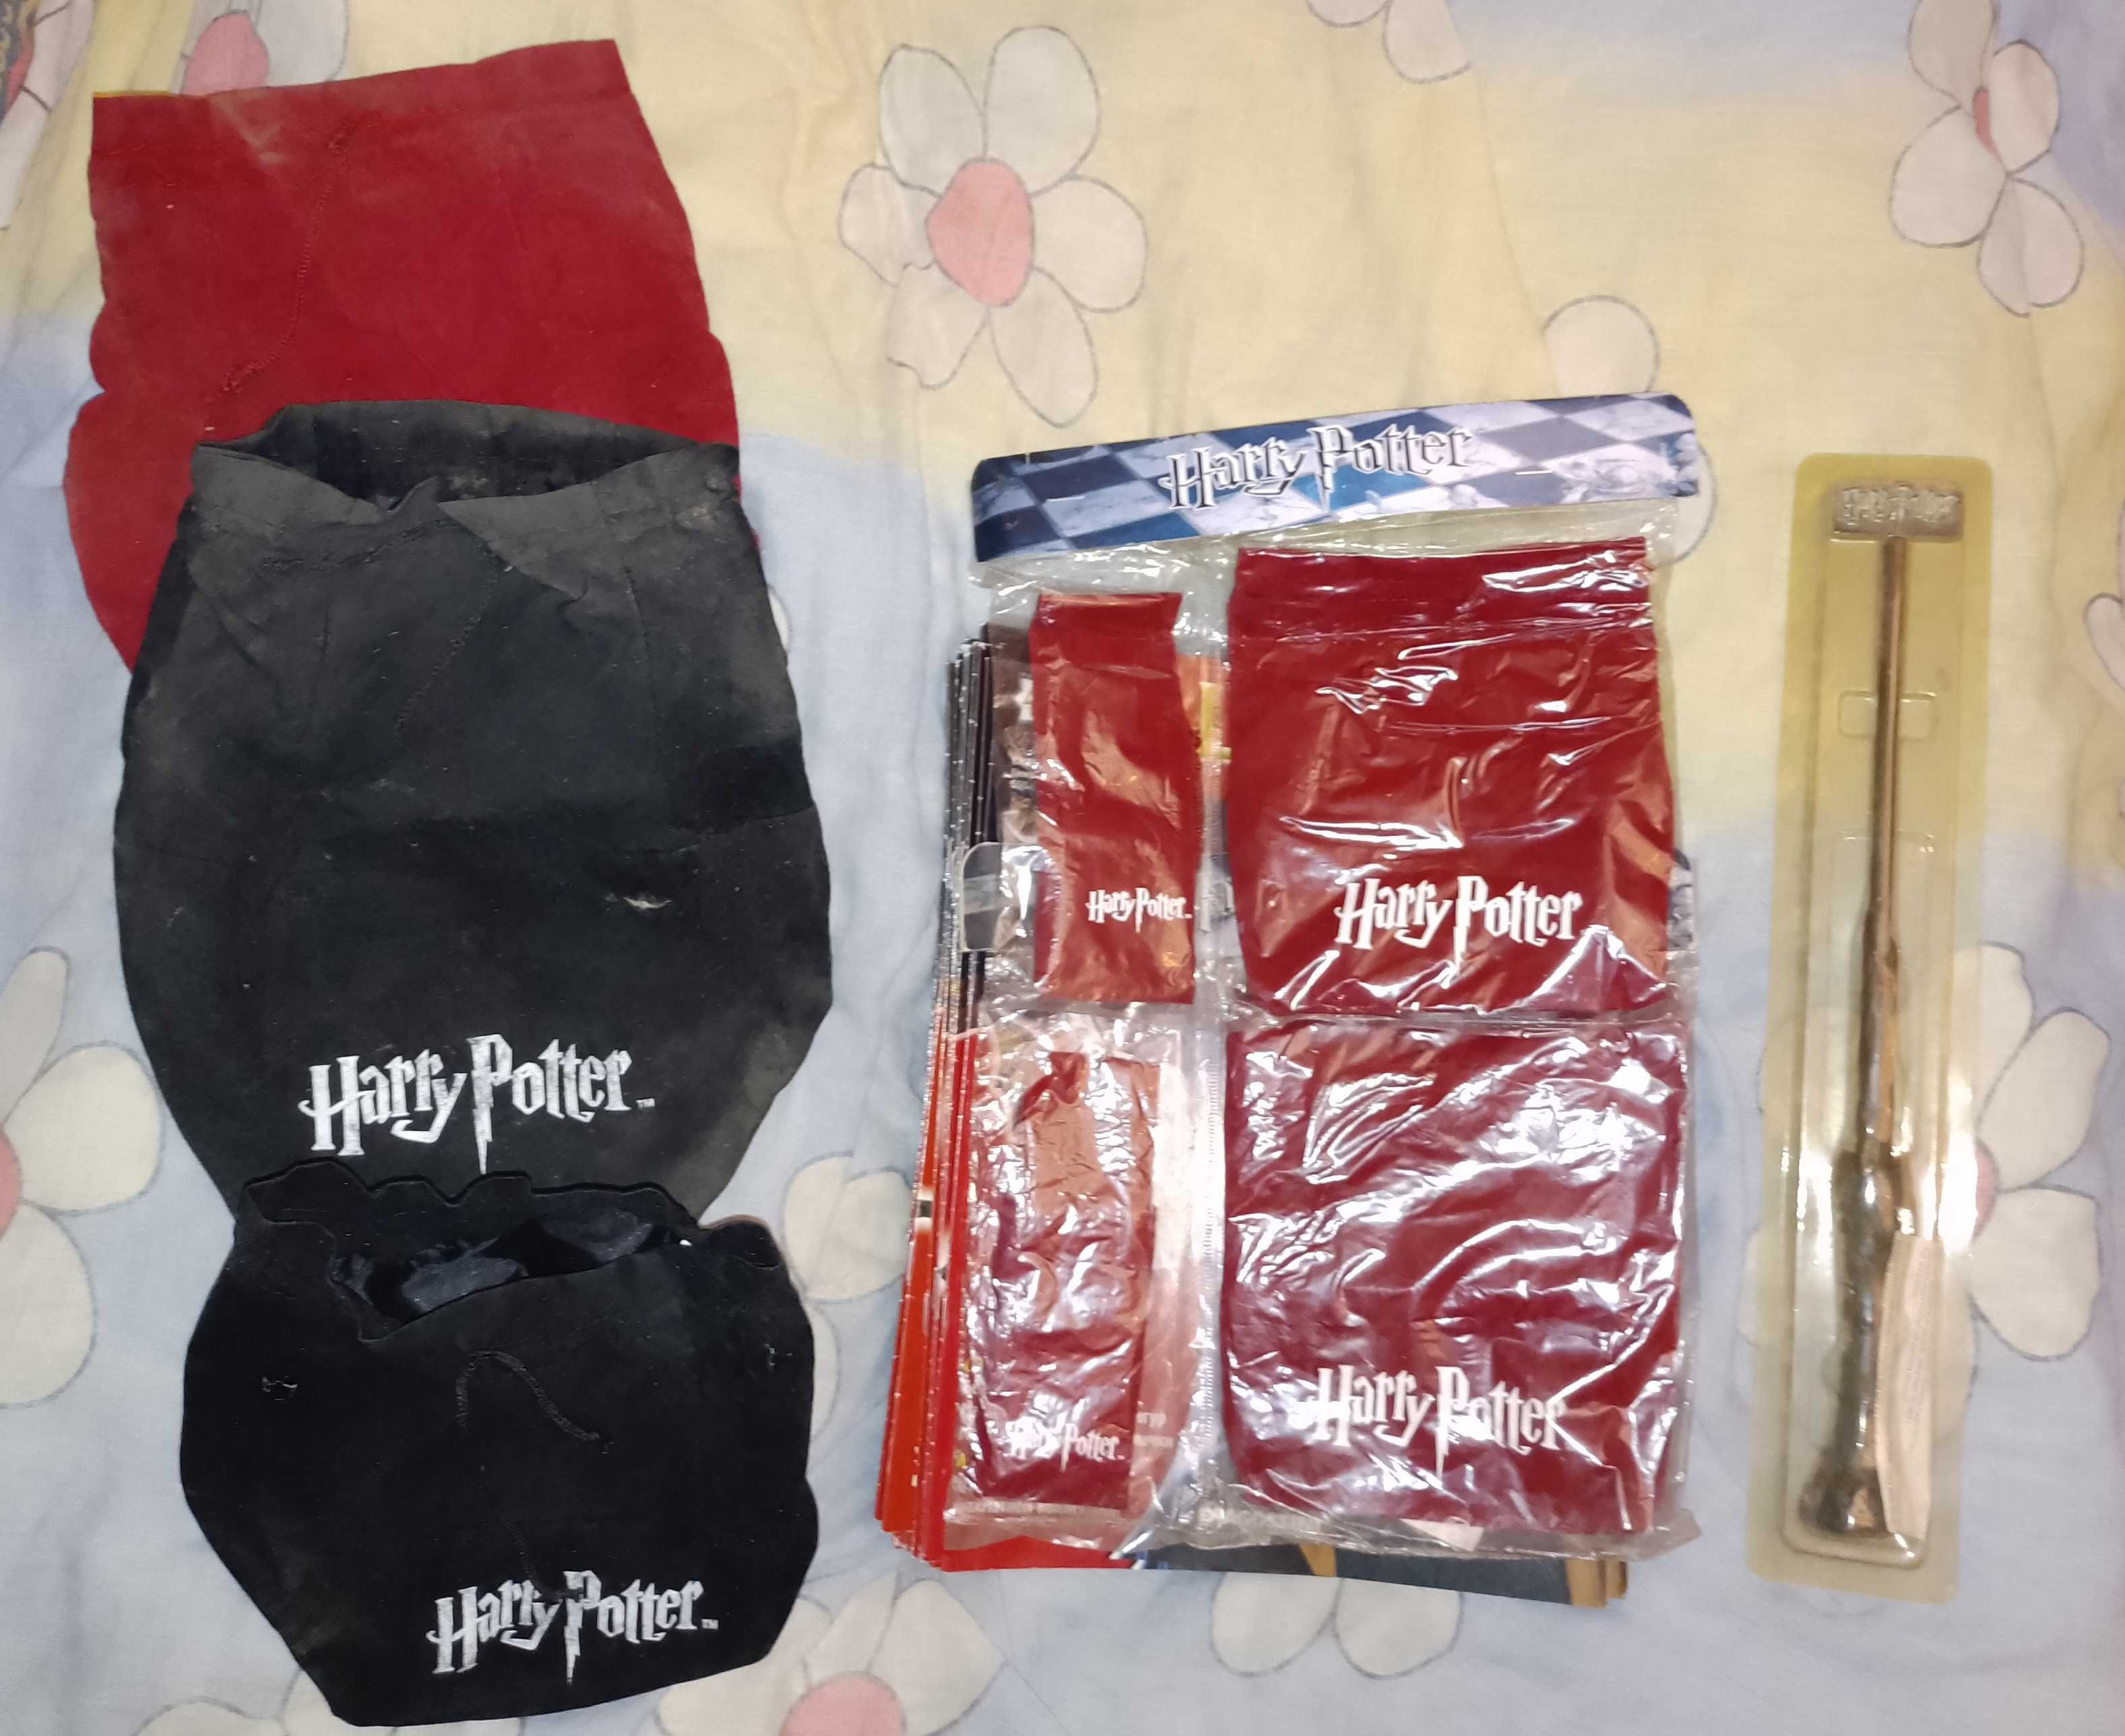 Гарри Поттер- журналы+фигуры и палочка. И Другие Карточки Разные.